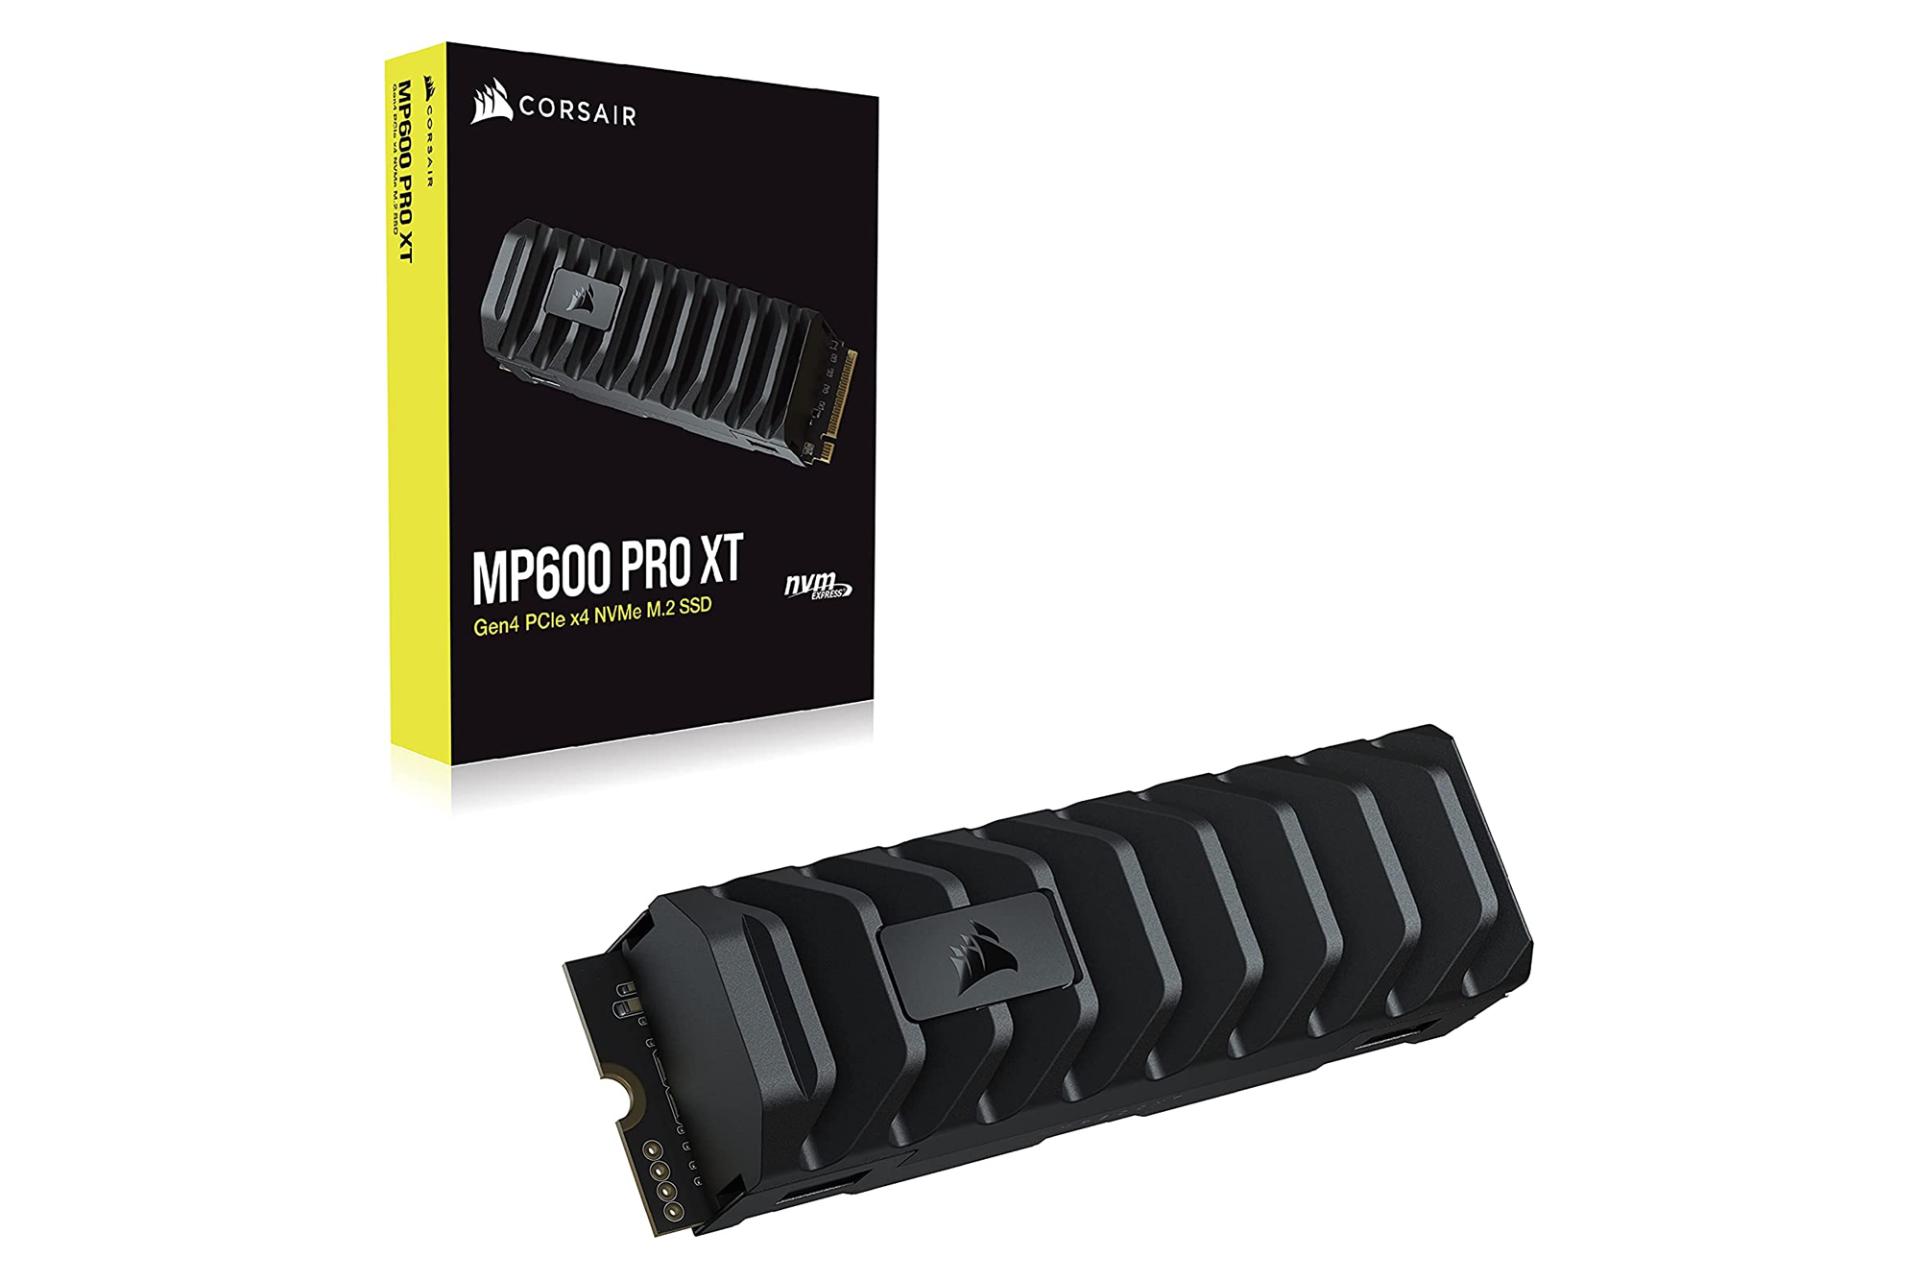 جعبه SSD کورسیر MP600 PRO XT NVMe M.2 ظرفیت 8 ترابایت